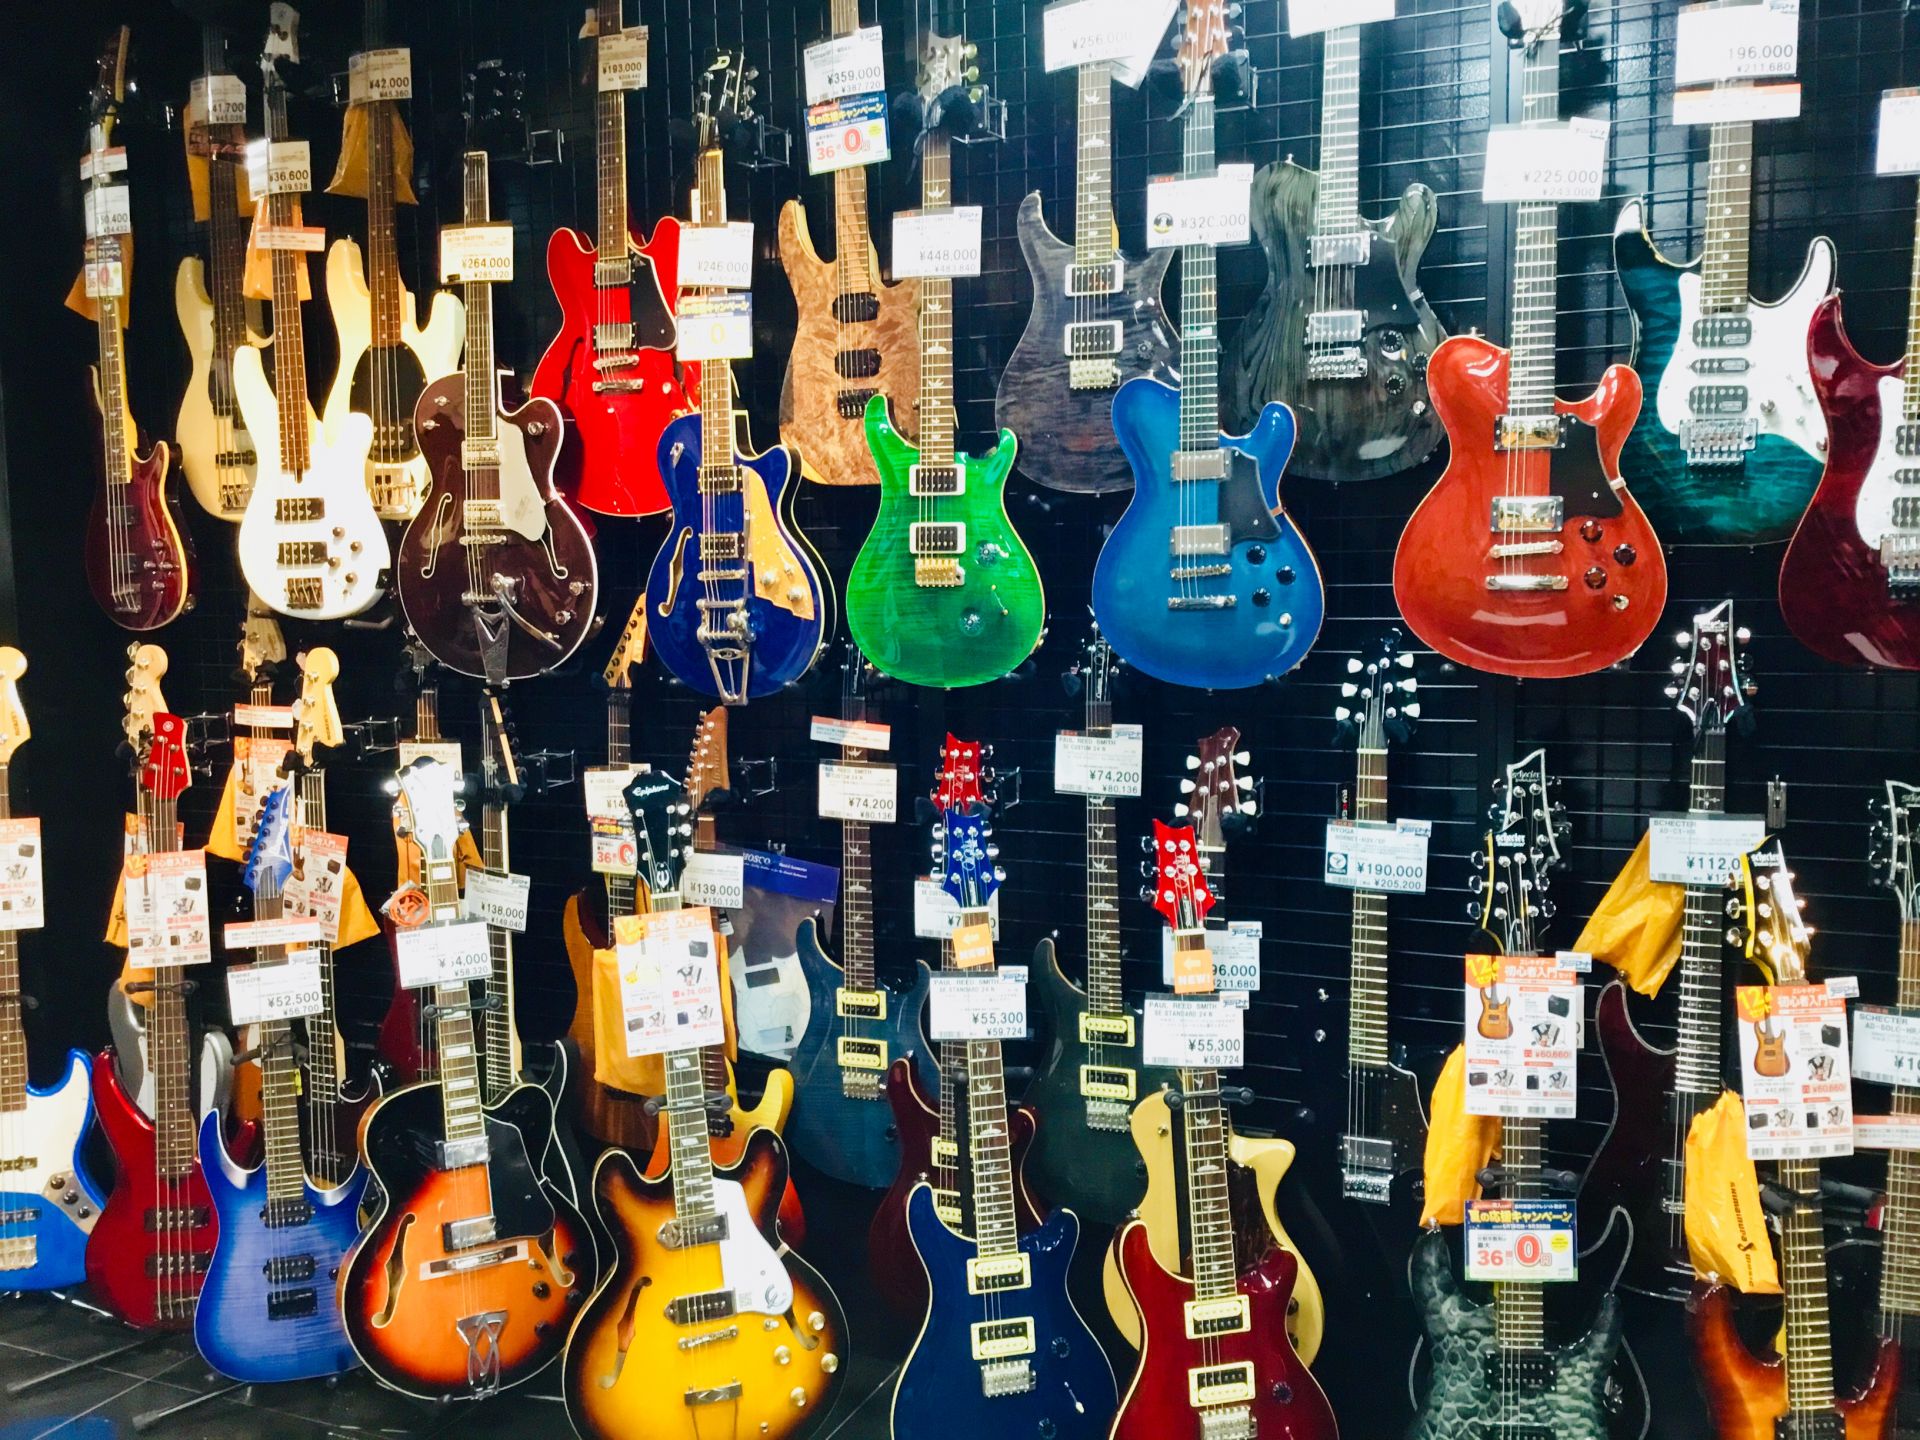 *ハンドメイド機種から入門機種まで幅広く展示 長崎の市街地に位置する当店ではエレキギターを多数展示しております。Gibson,Fenderは勿論のこと、日本製の高品質モデルや これから始める方にもお買い求めやすい価格帯も多数展示しております。 長崎県下でエレキギターをお探しなら島村楽器長崎浜町店に是 […]